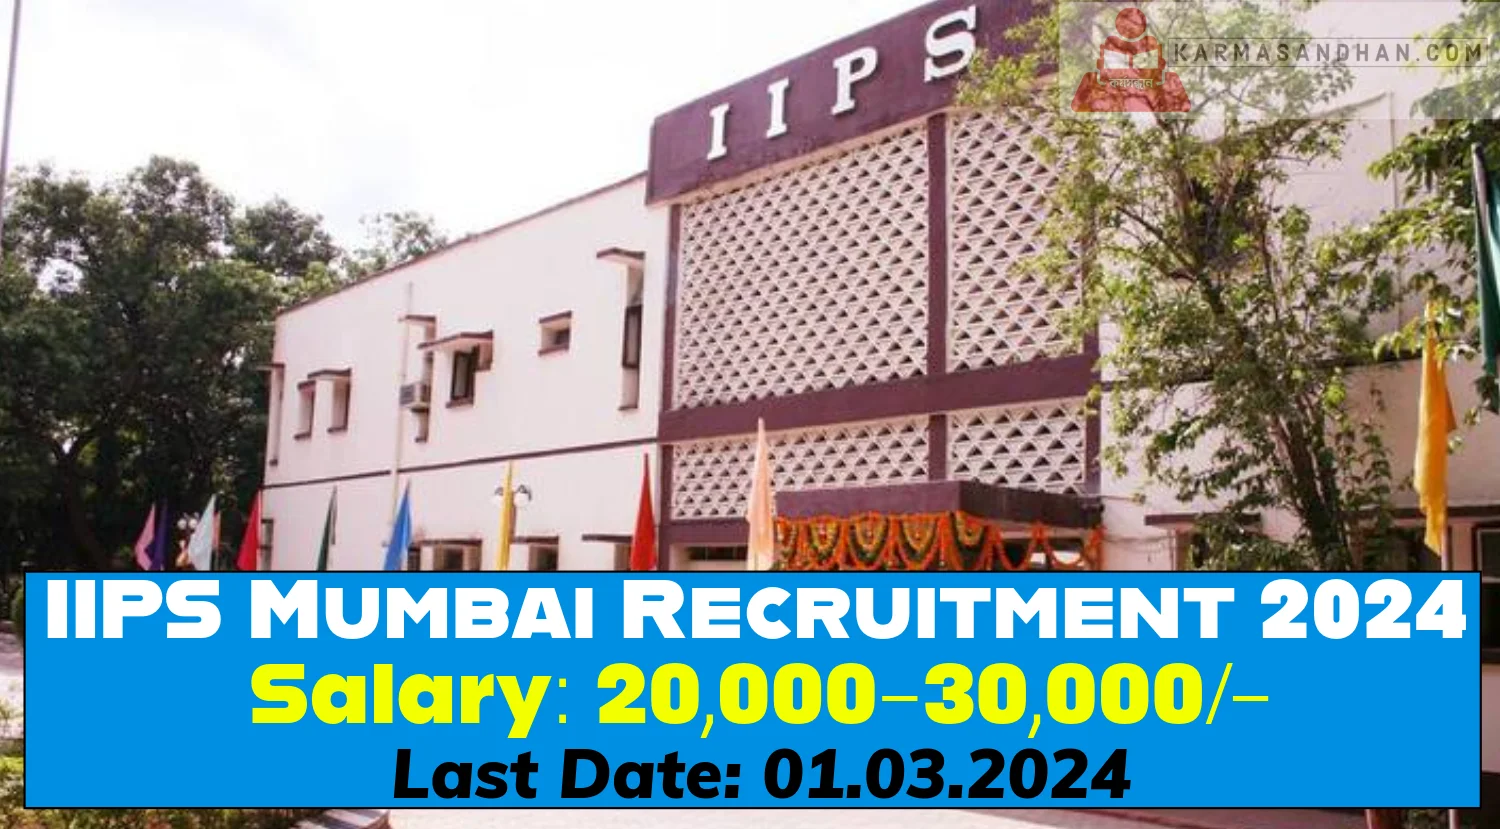 IIPS Mumbai Recruitment 2024